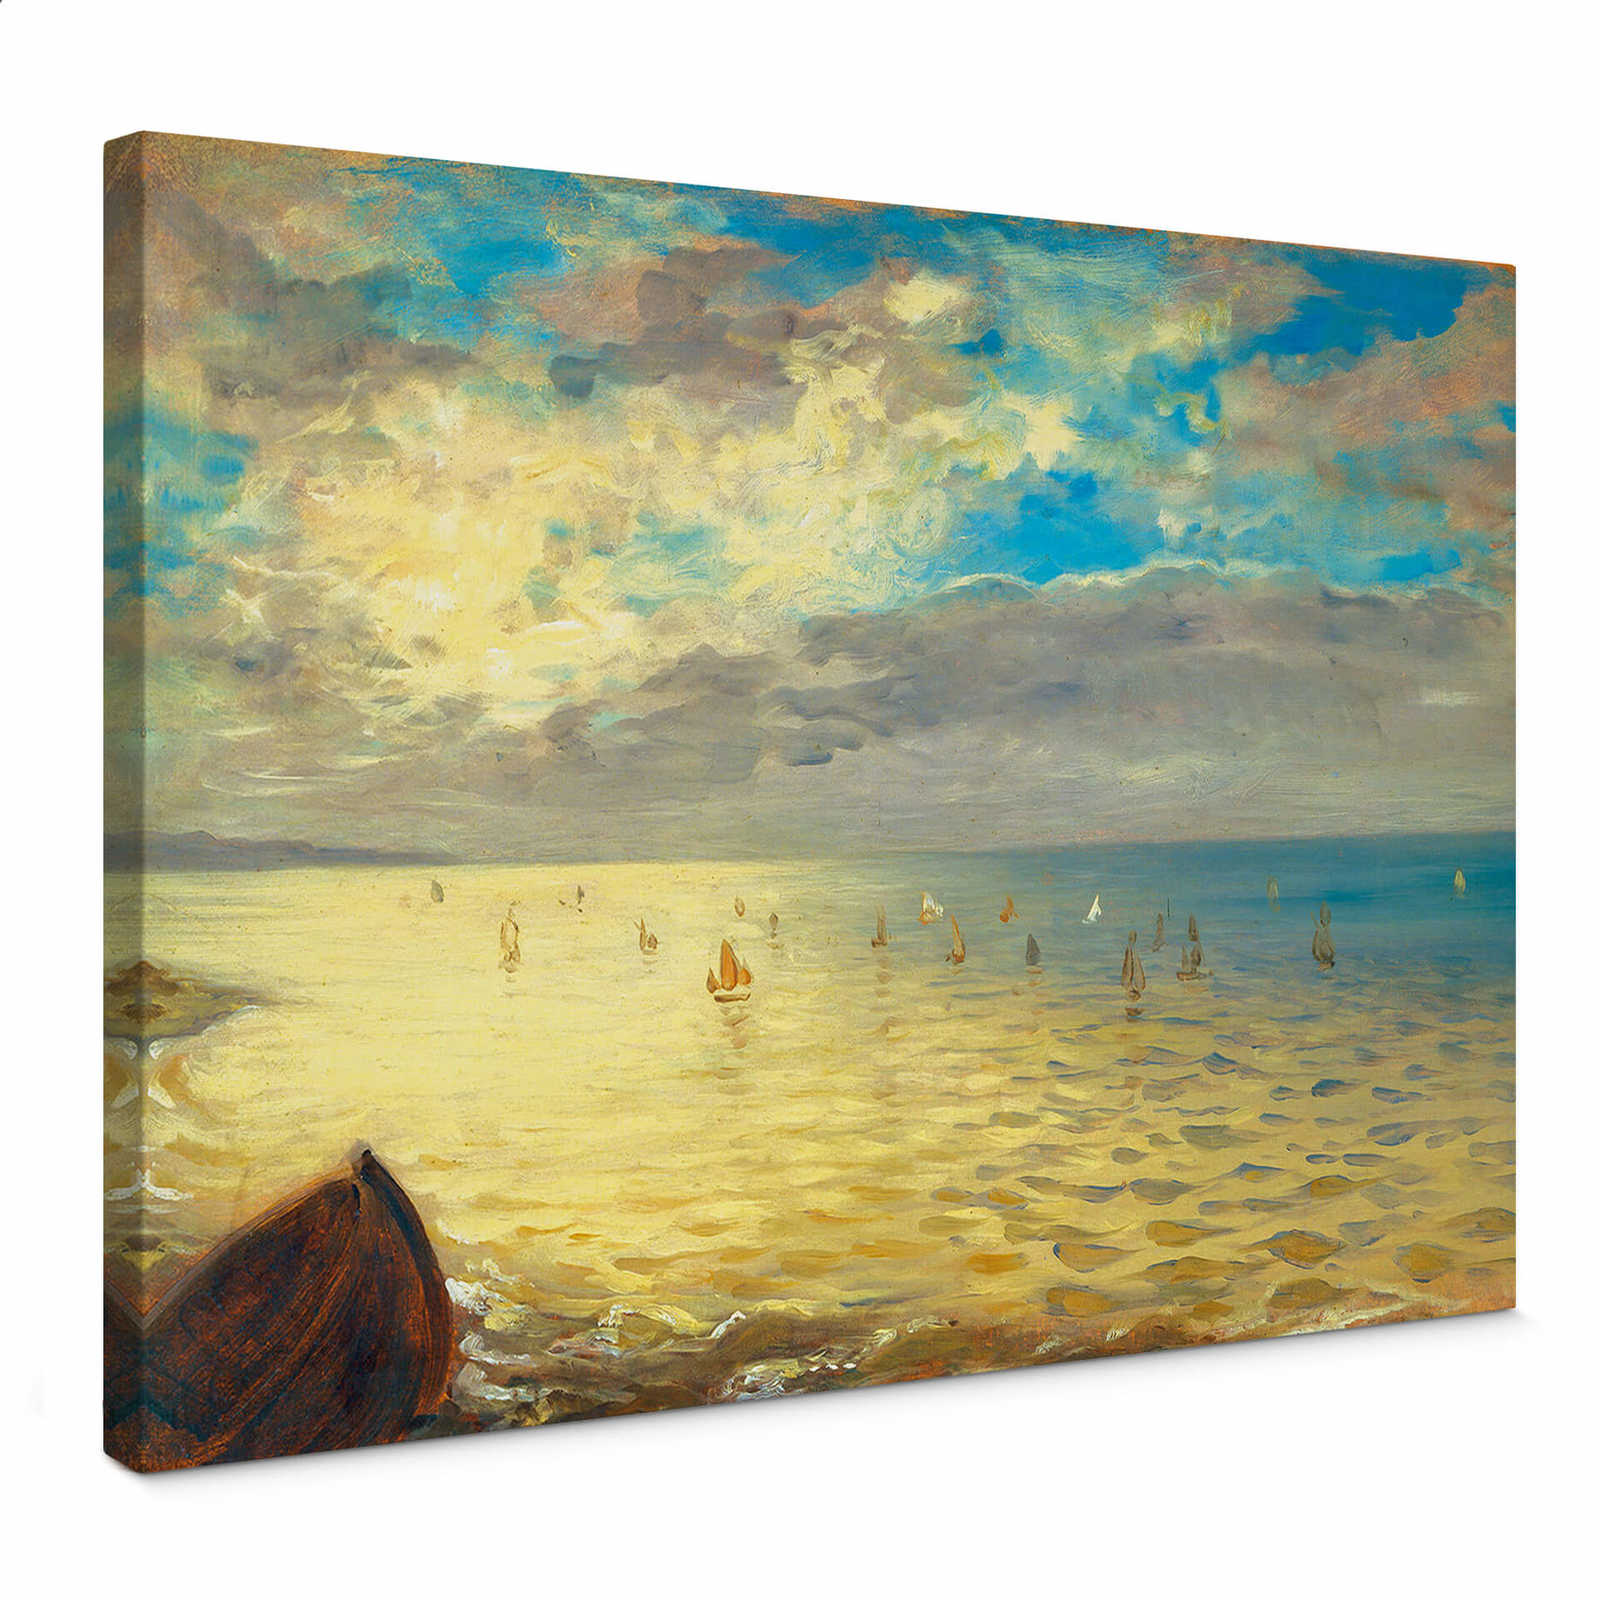         Kunst Leinwandbild "Das Meer" von Delacroix – 0,70 m x 0,50 m
    